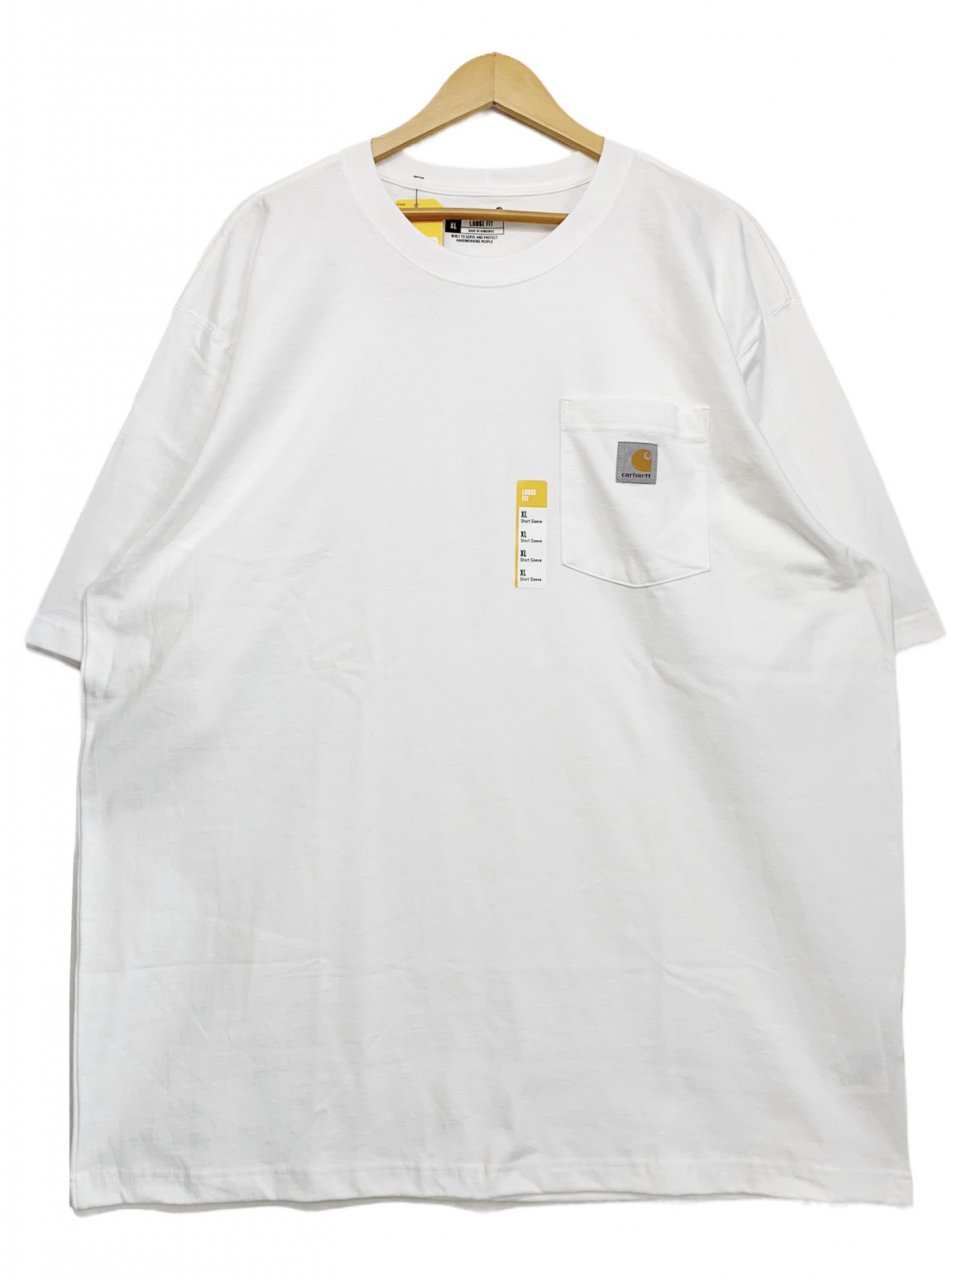 新品 US企画 Carhartt Pocket S/S Tee (WHITE) カーハート ポケット付 半袖 Tシャツ ポケT 無地T 白 ホワイト  - NEWJOKE ONLINE STORE